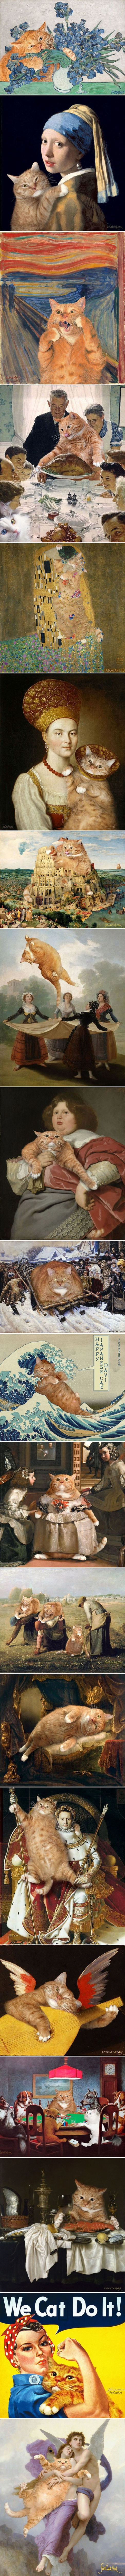 Žena ubacuje slike svoga debelog mačka u umjetnička djela kako bi ih učinila još boljima